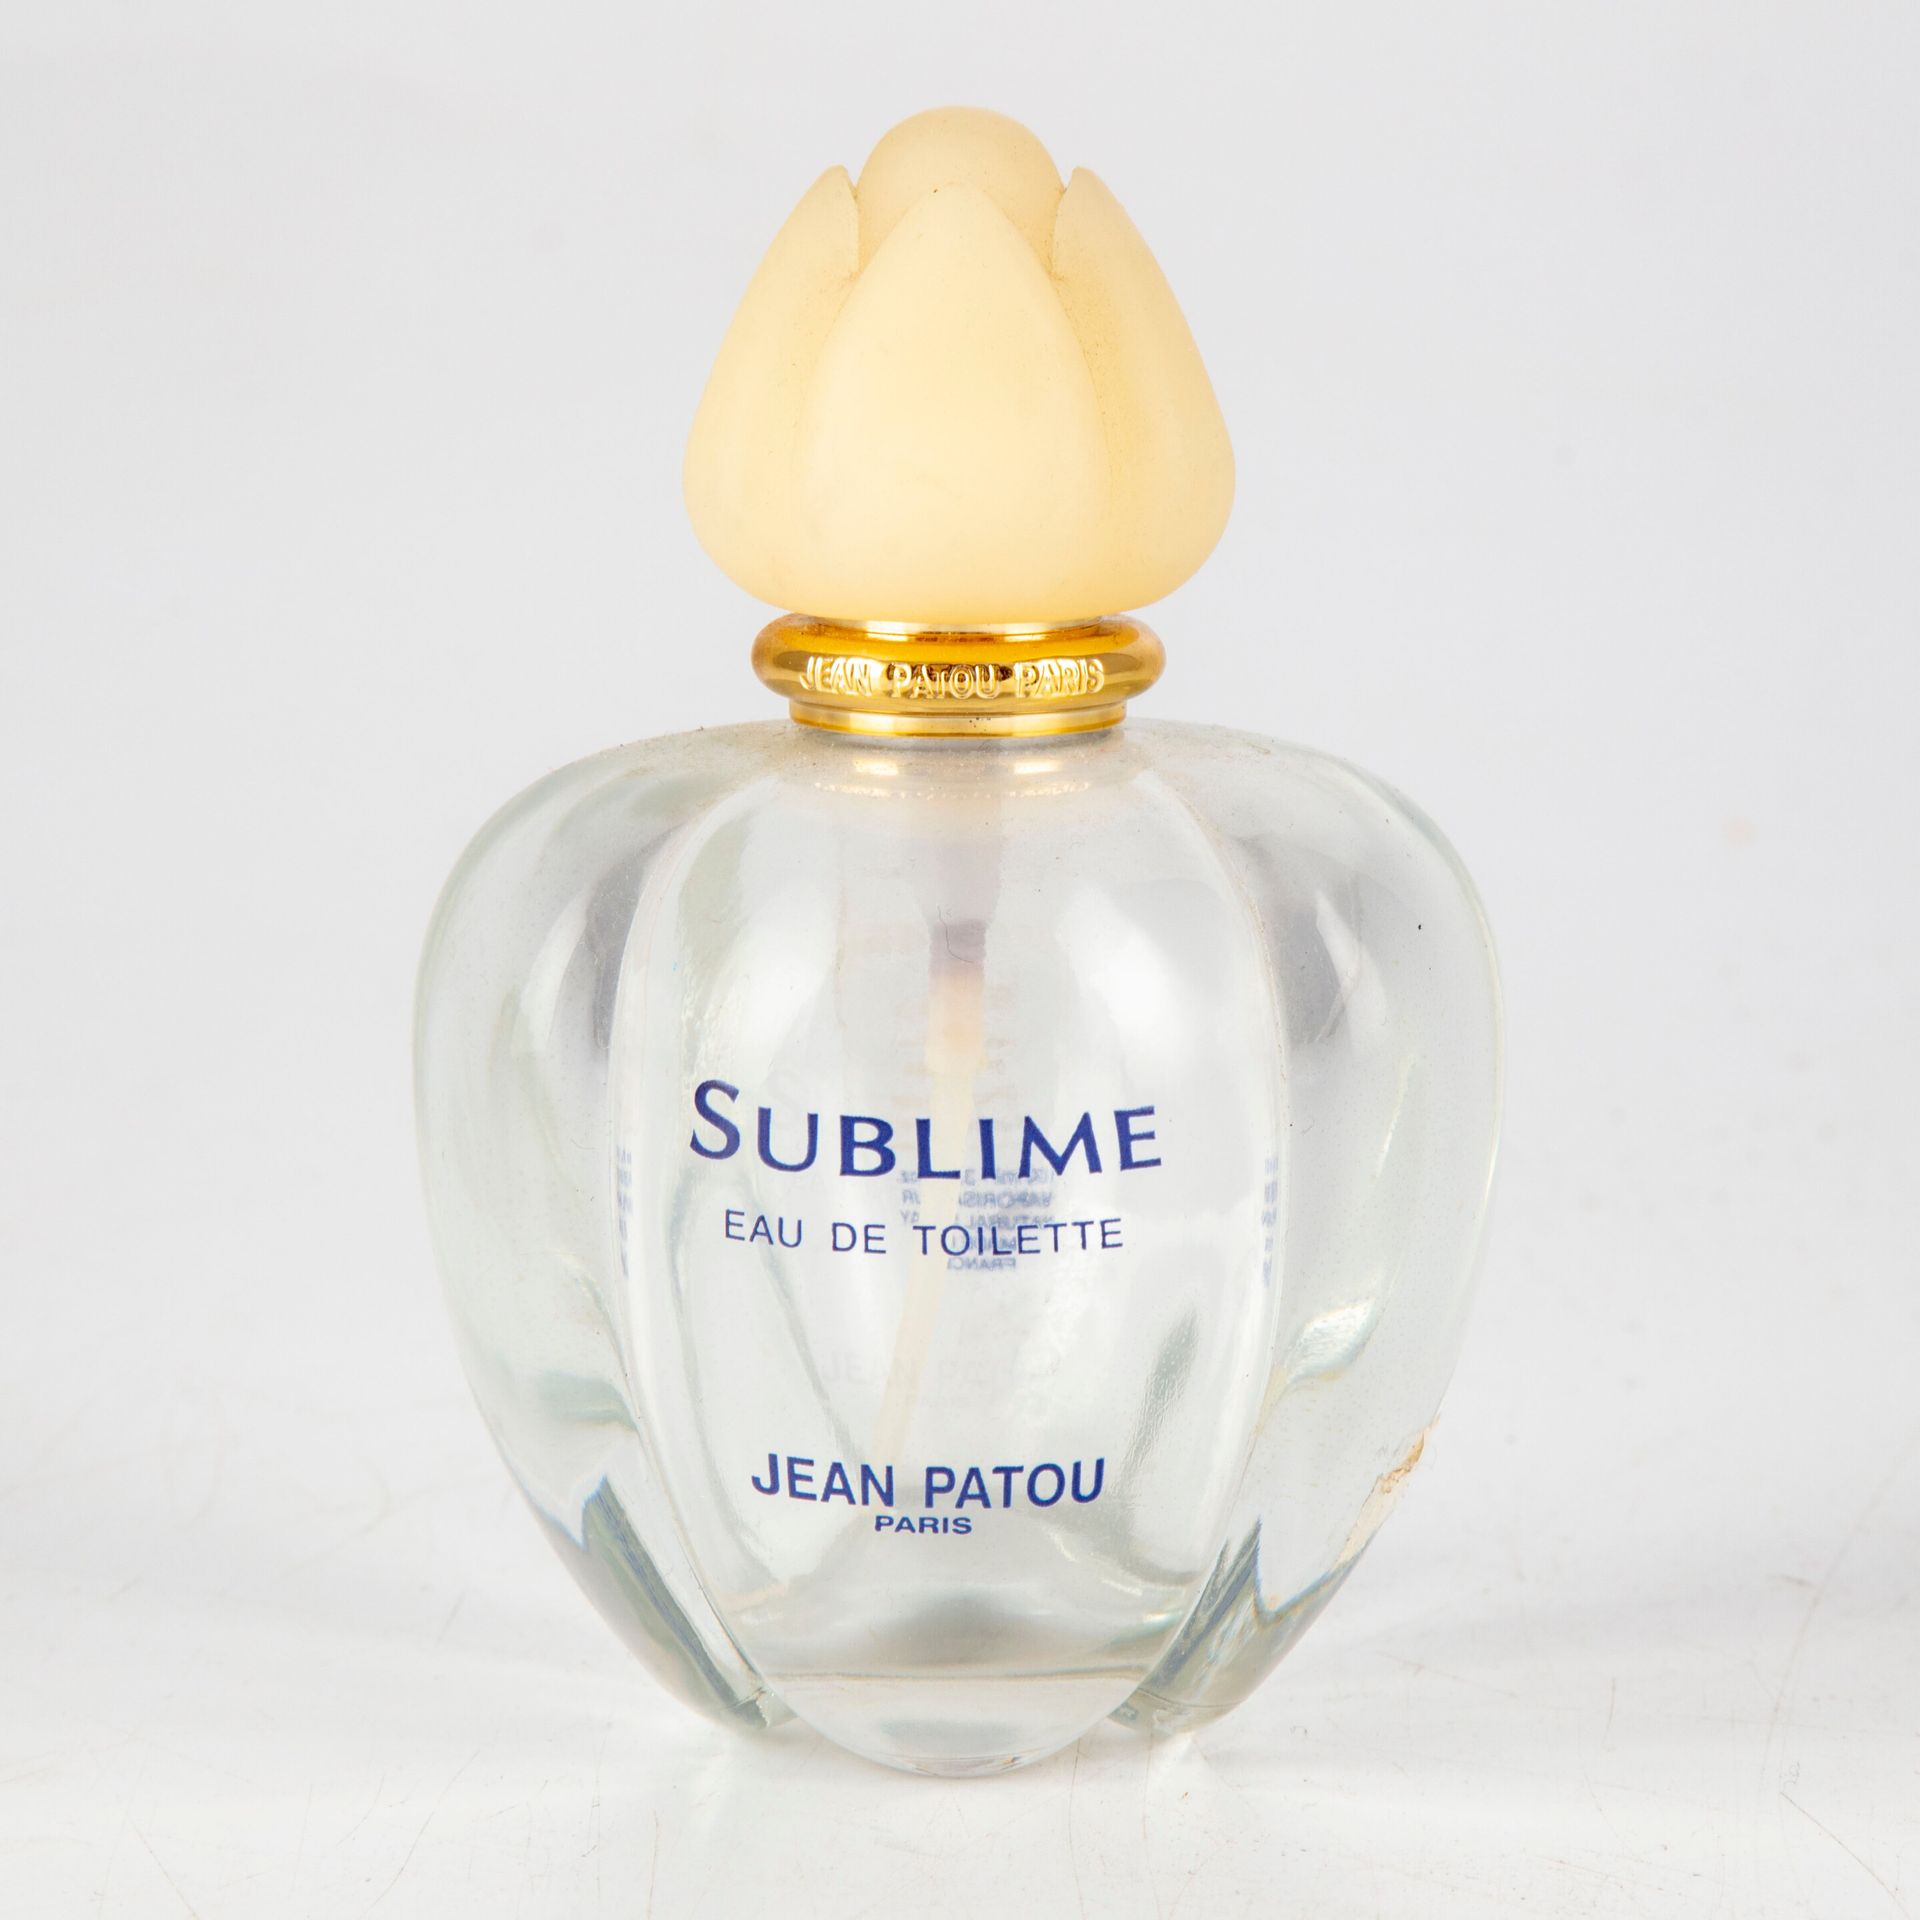 Null Jean PATOU

1 bottle Sublime 

H. 11 cm